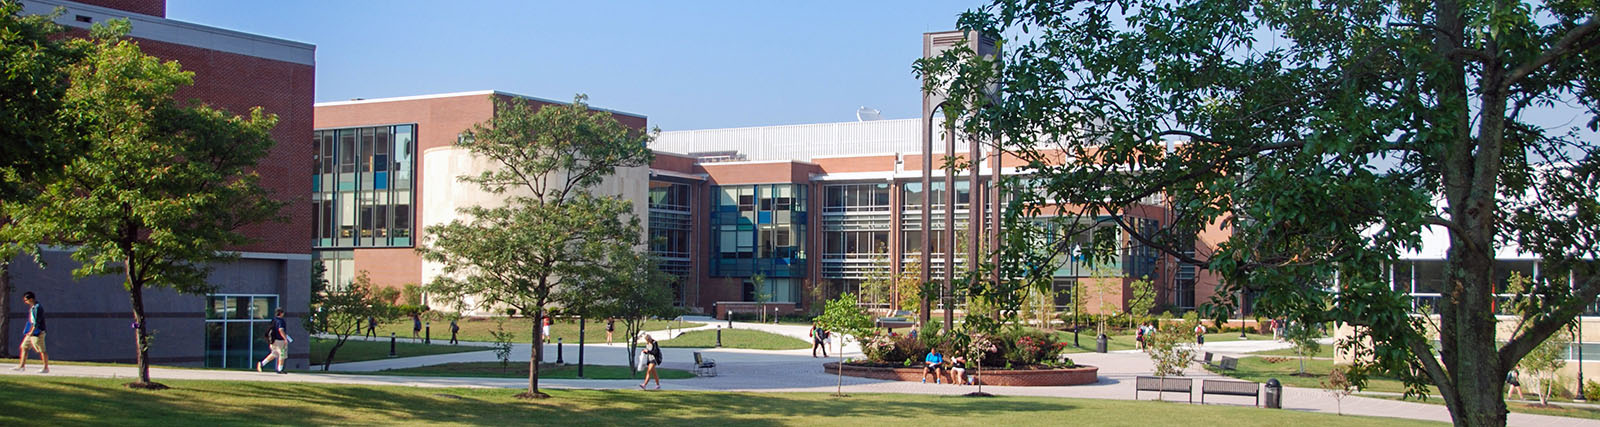 Lower Campus Quad at CCIT building